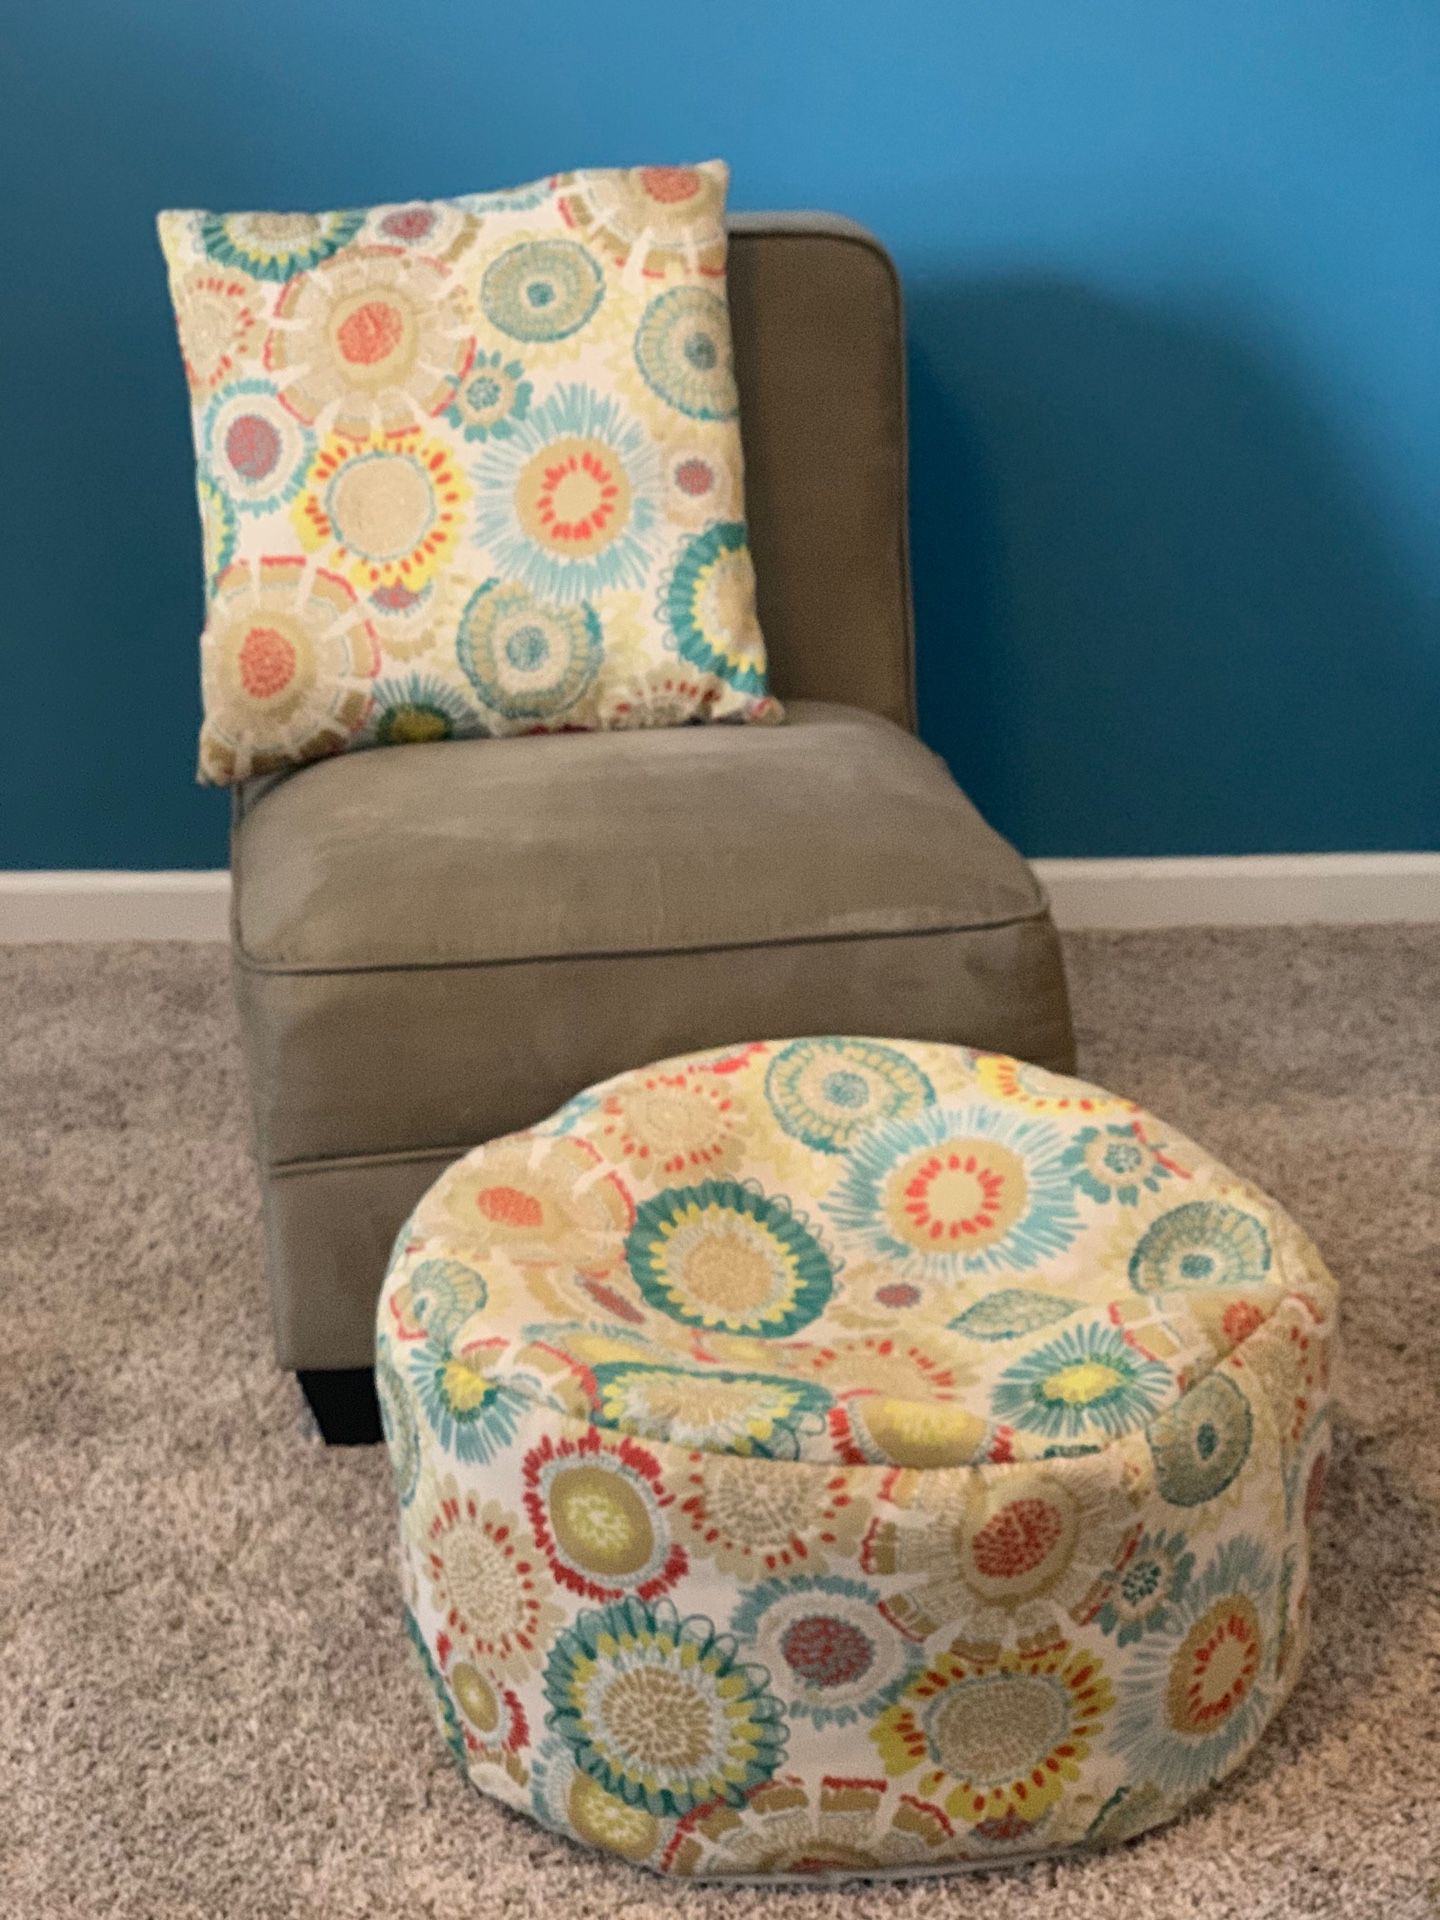 Chair w/ottoman & pillow